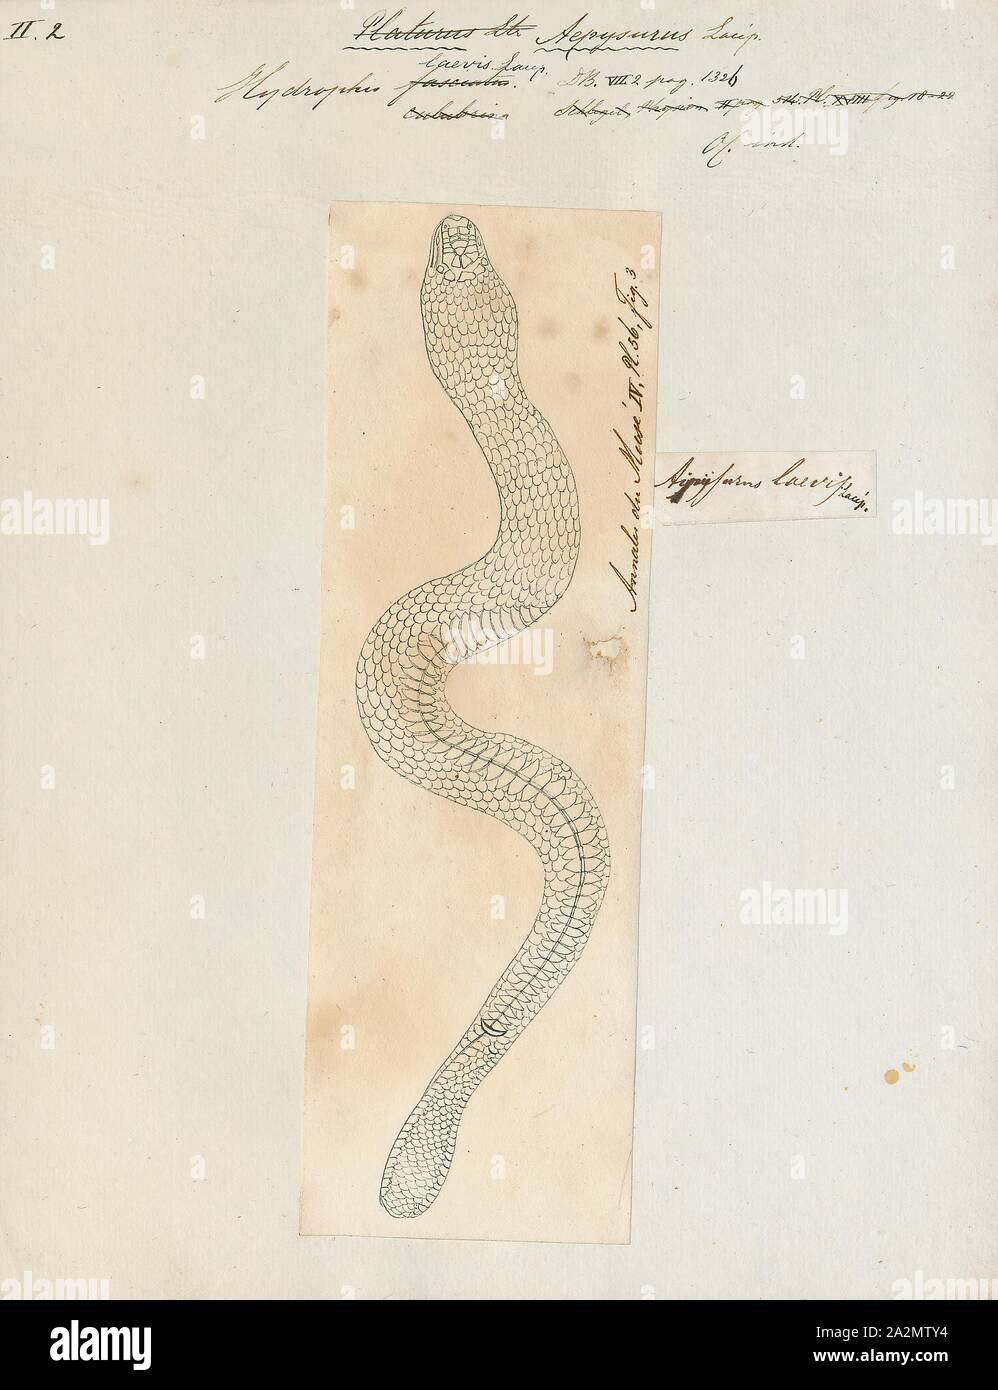 Hydrophis laevis, Drucken, Hydrophis ist eine Gattung der Seeschlangen. Sie sind in der Regel in Indo-Australian und Südostasiatischen Gewässern gefunden., 1700-1880 Stockfoto